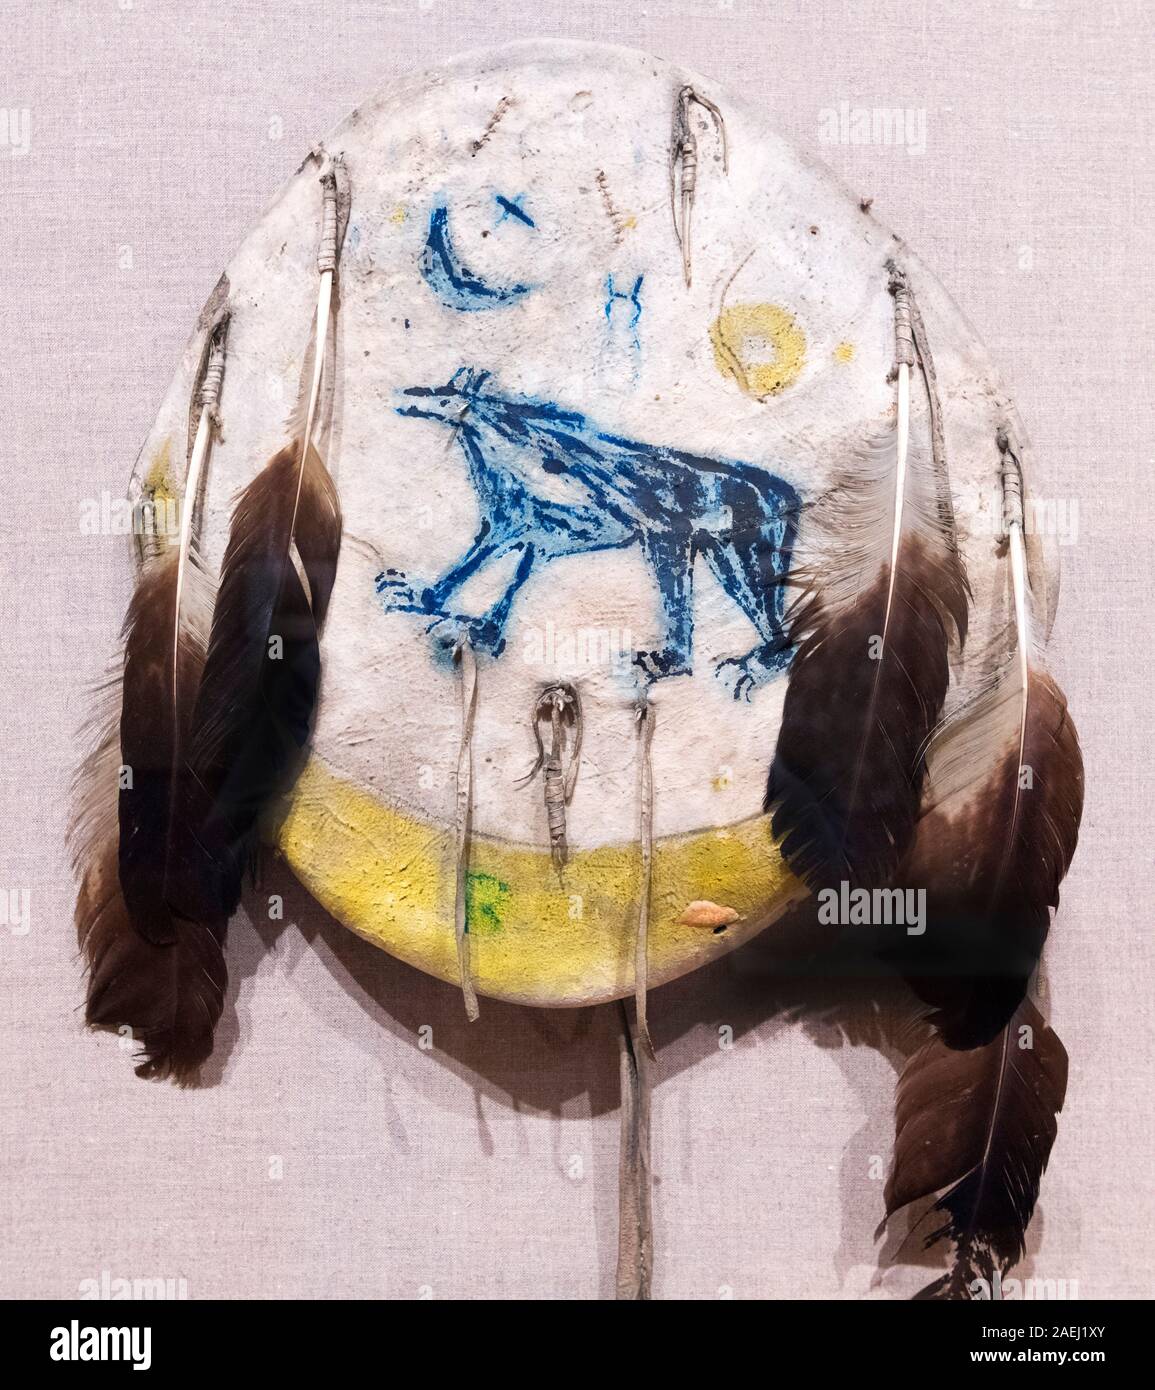 Escudo de nativos americanos, indios de las Llanuras, de finales del siglo XIX, pintura y plumas en ocultar. Foto de stock